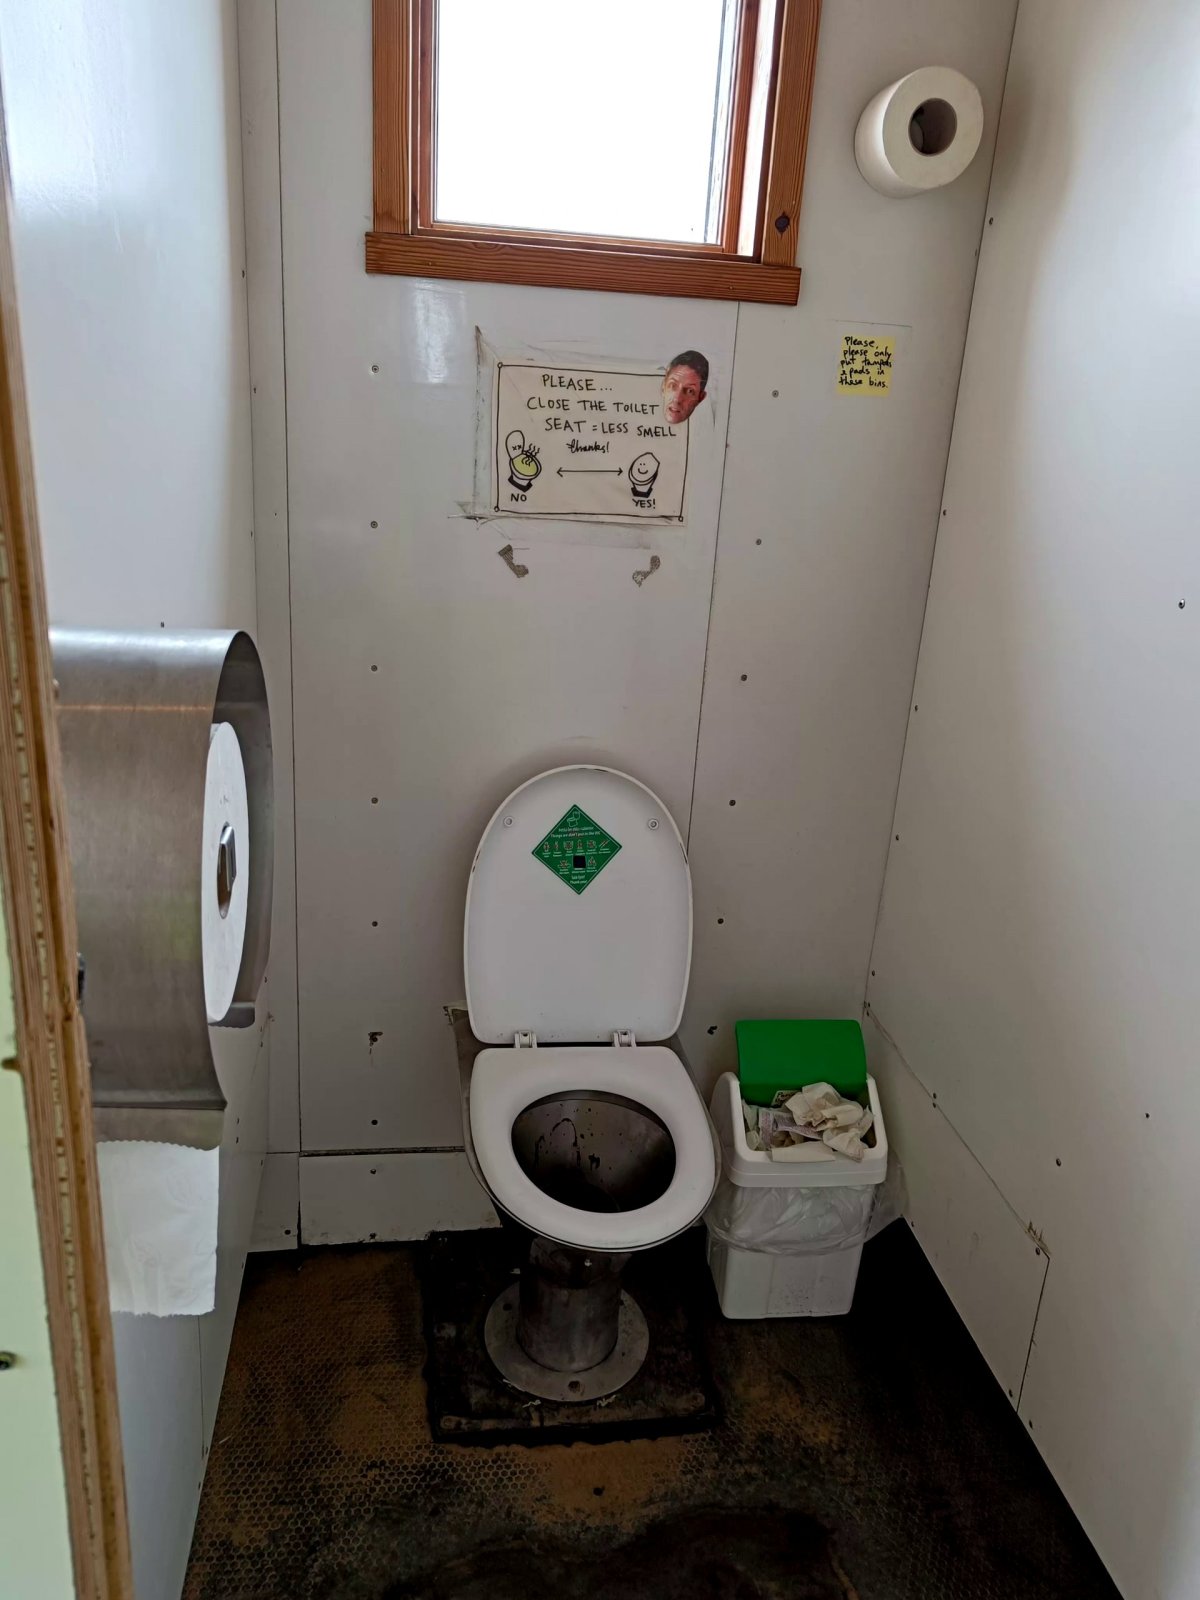 Záchody v kempu Hrafntinnusker - čpavek :)